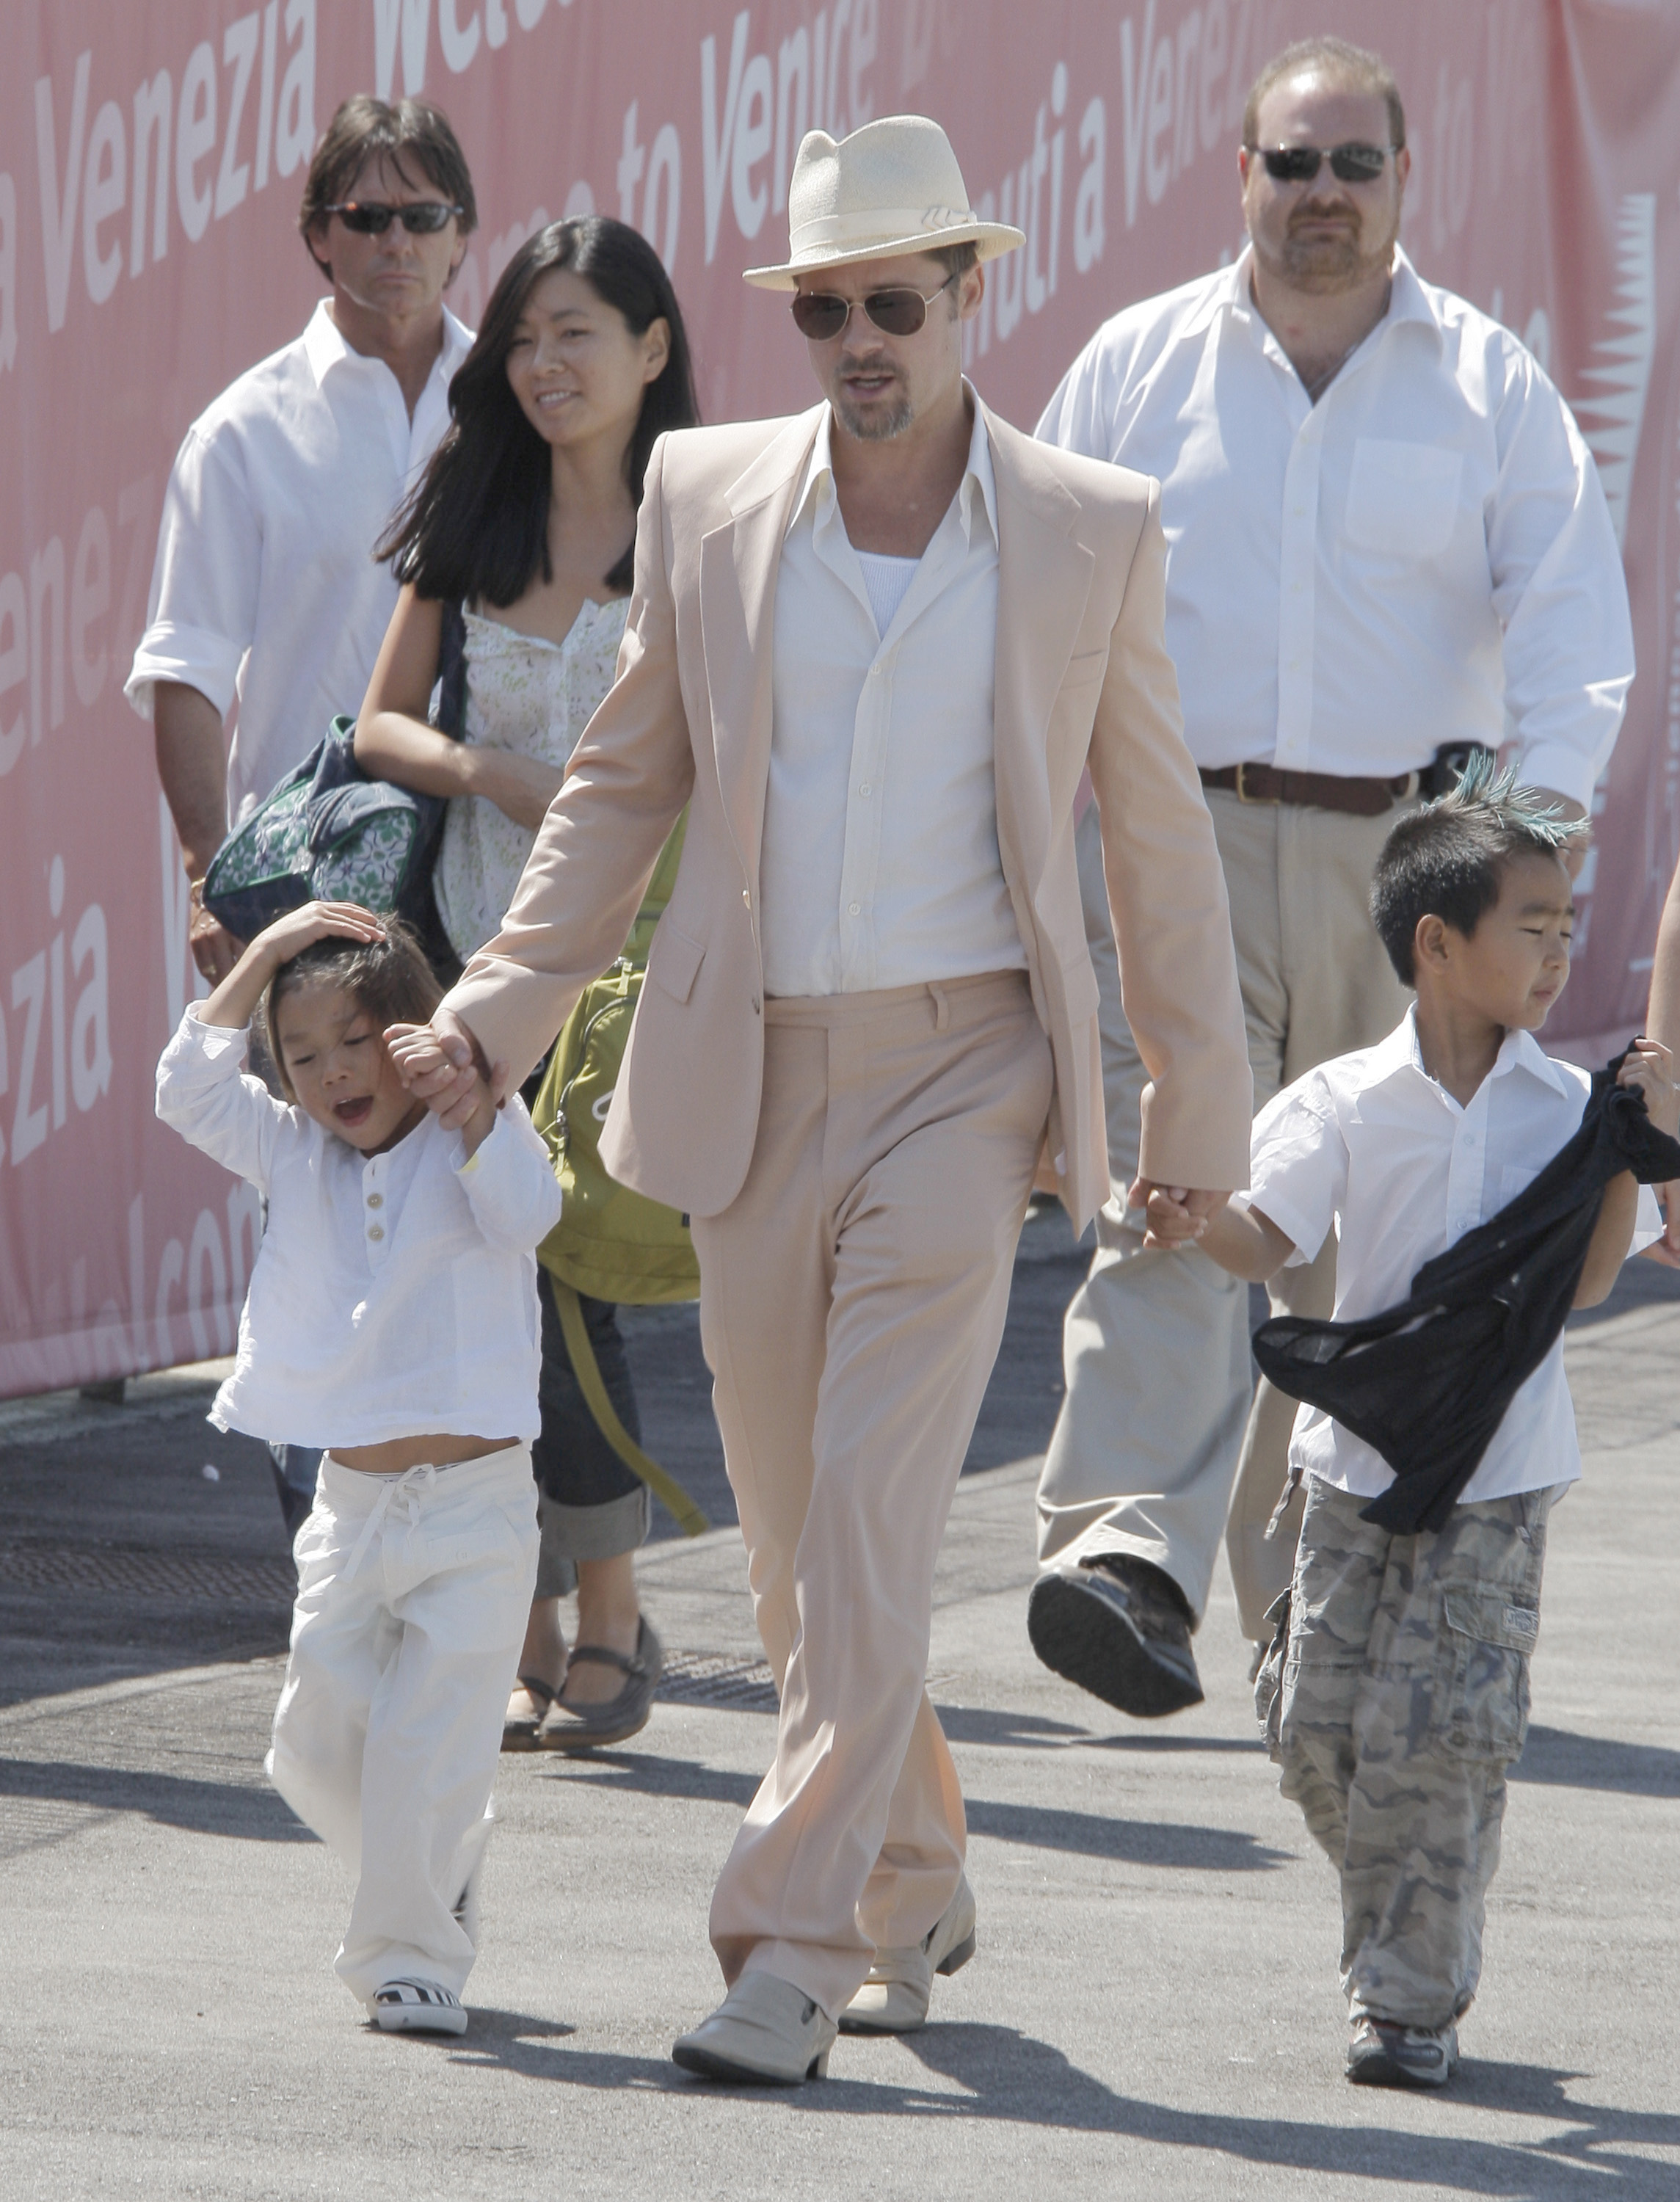 Brad Pitt et ses fils adoptifs Pax Thien Jolie-Pitt et Maddox Jolie-Pitt quittant Venise après un séjour au Festival du film de Venise le 28 août 2008 à Venise (Italie) : Getty Images